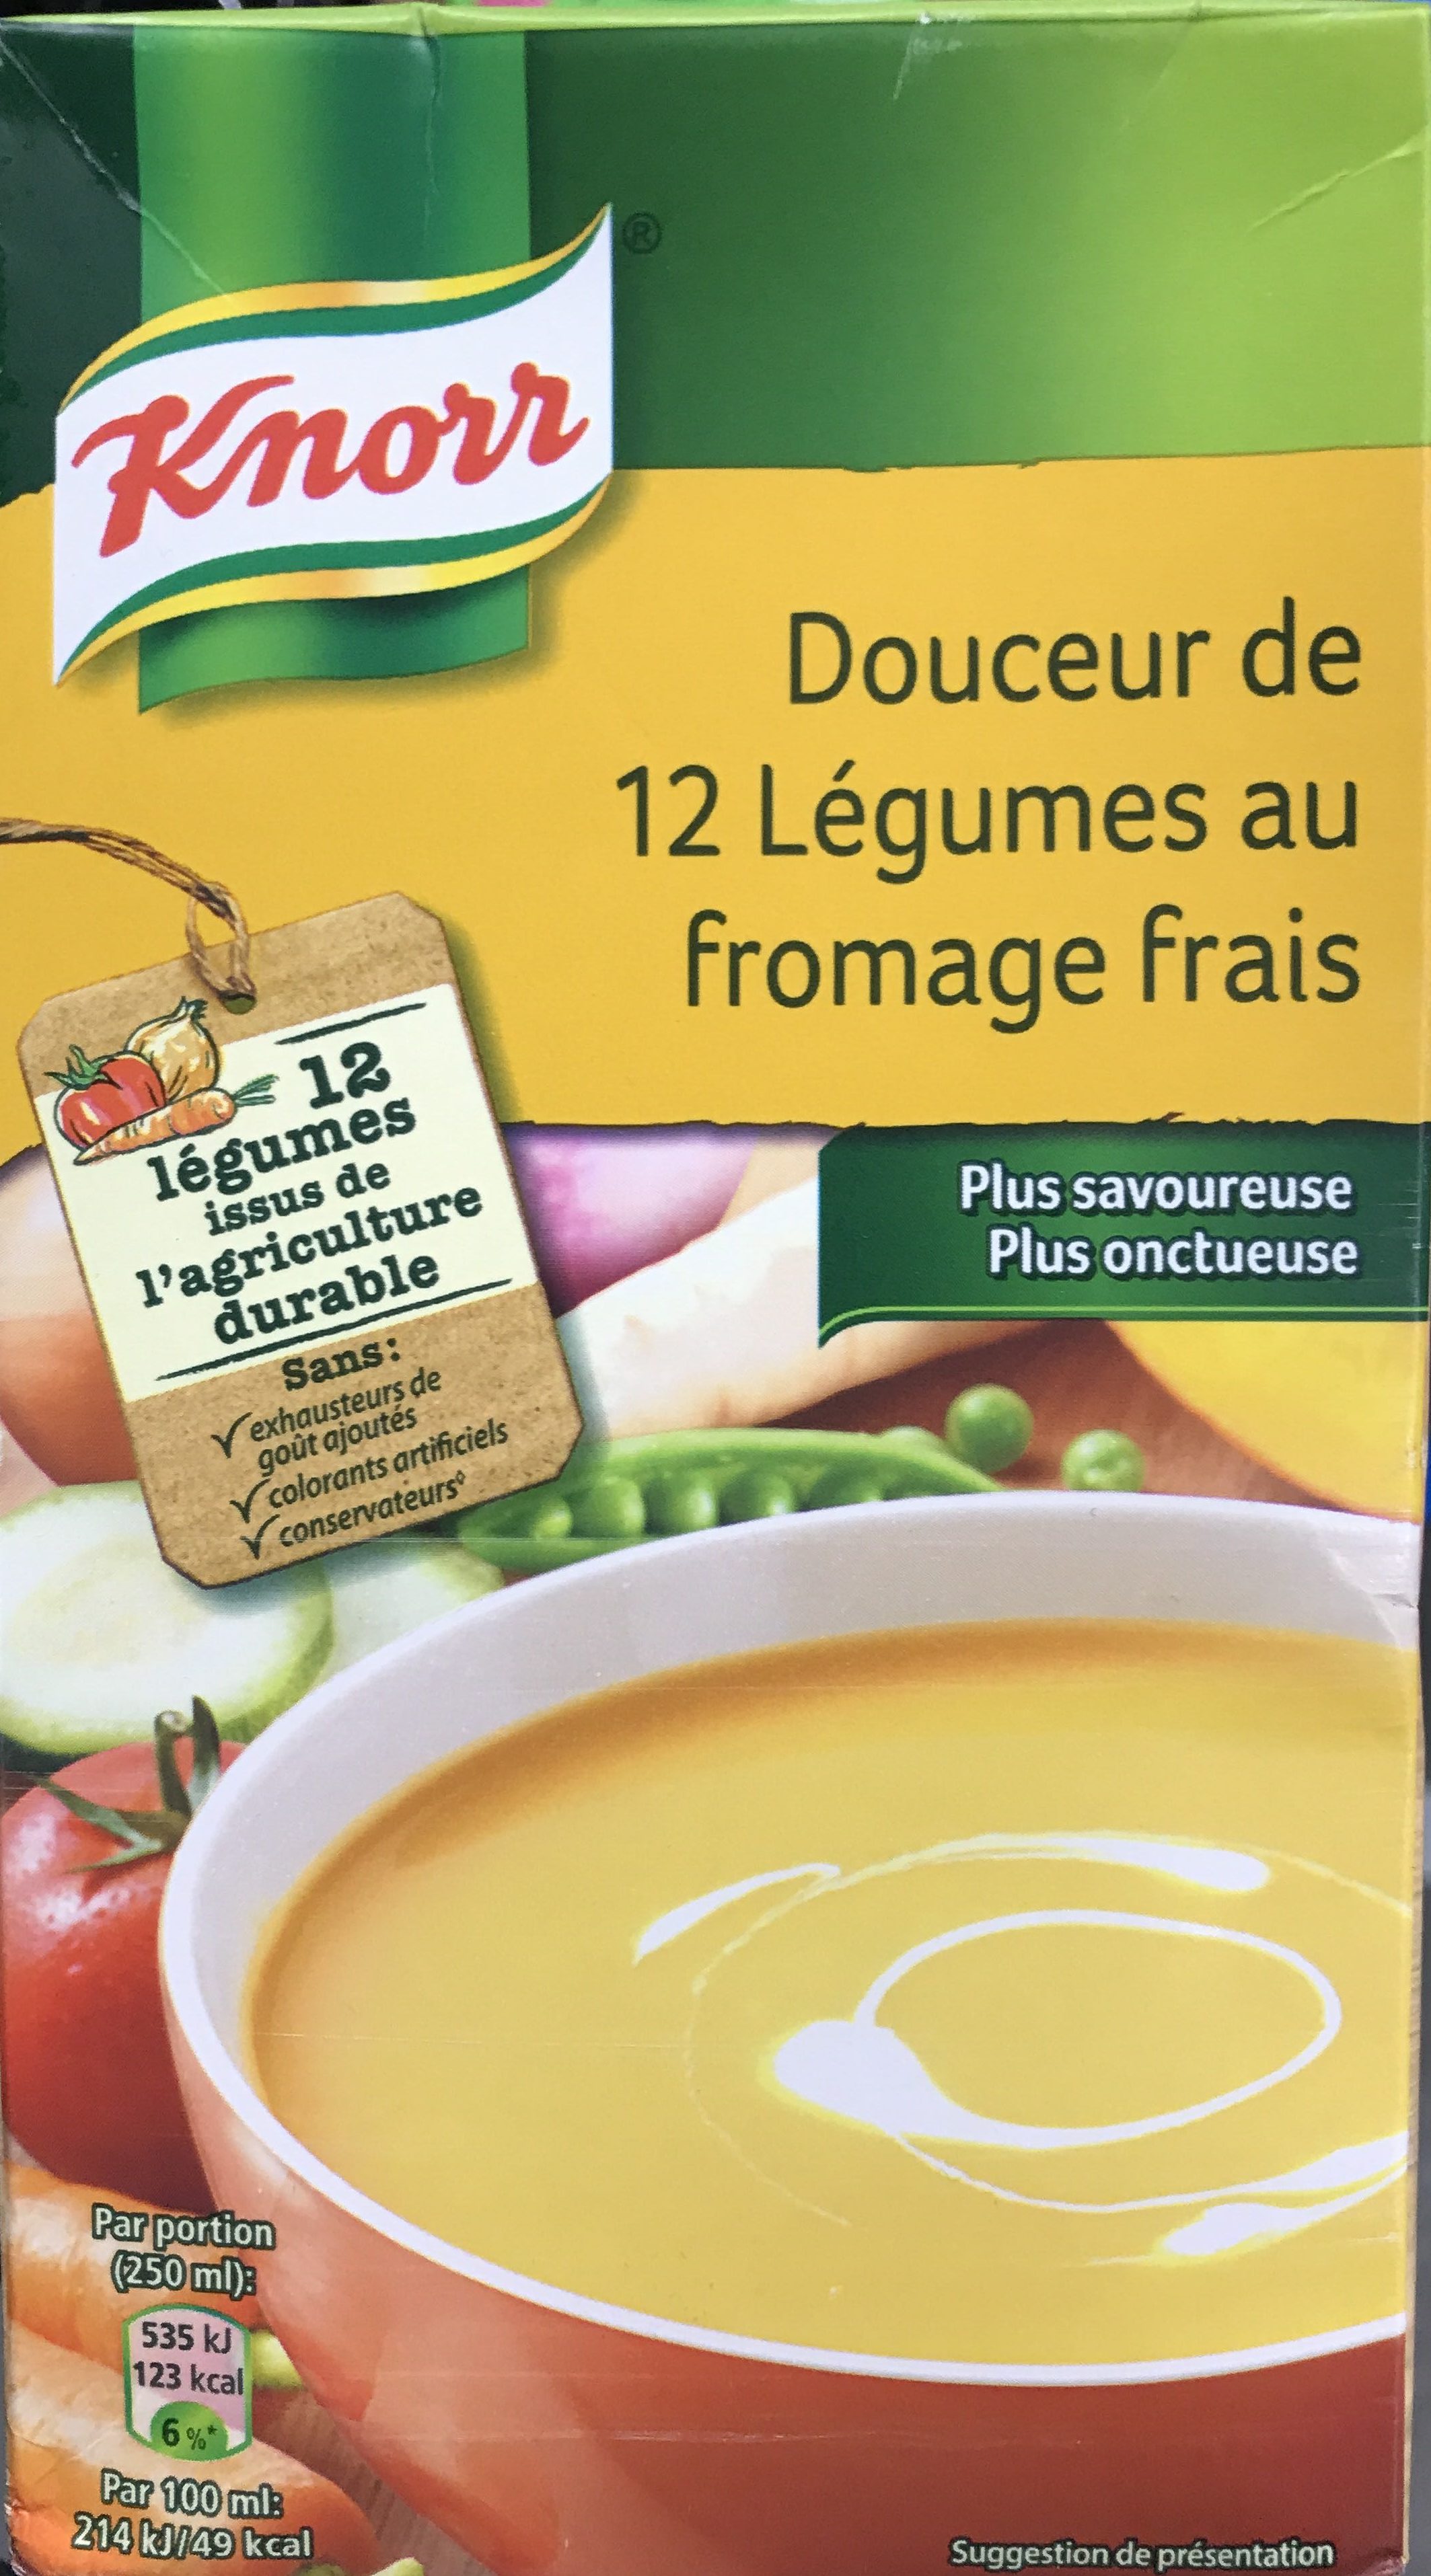 Douceur de 12 légumes au fromage frais - Product - fr